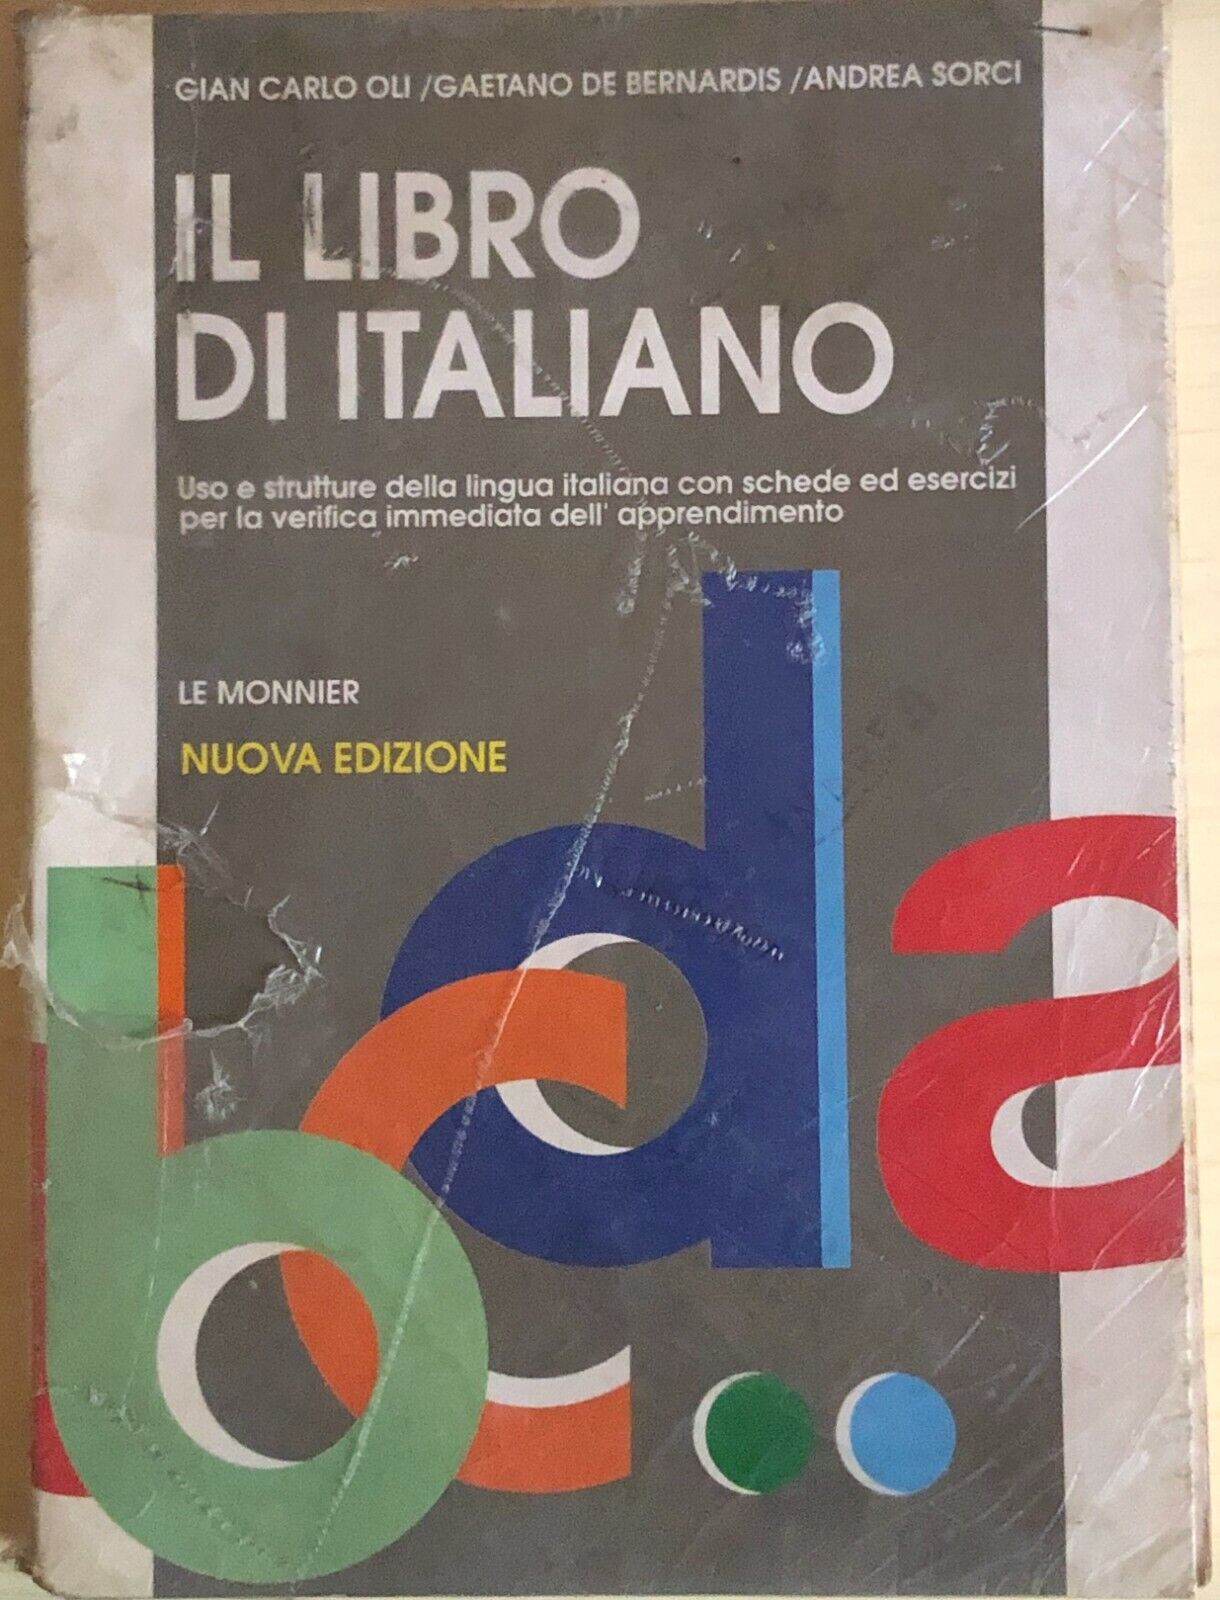 Il libro di italiano di AA.VV., 1993, Le Monnier